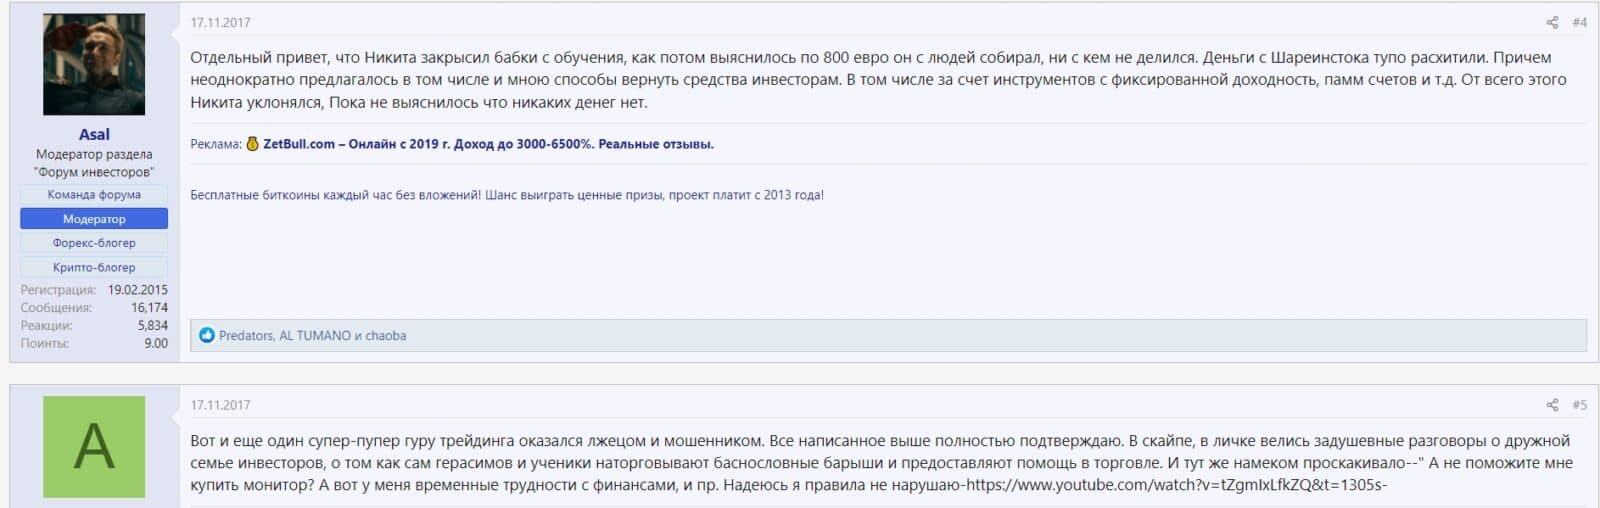 Отзывы о Никите Герасимове